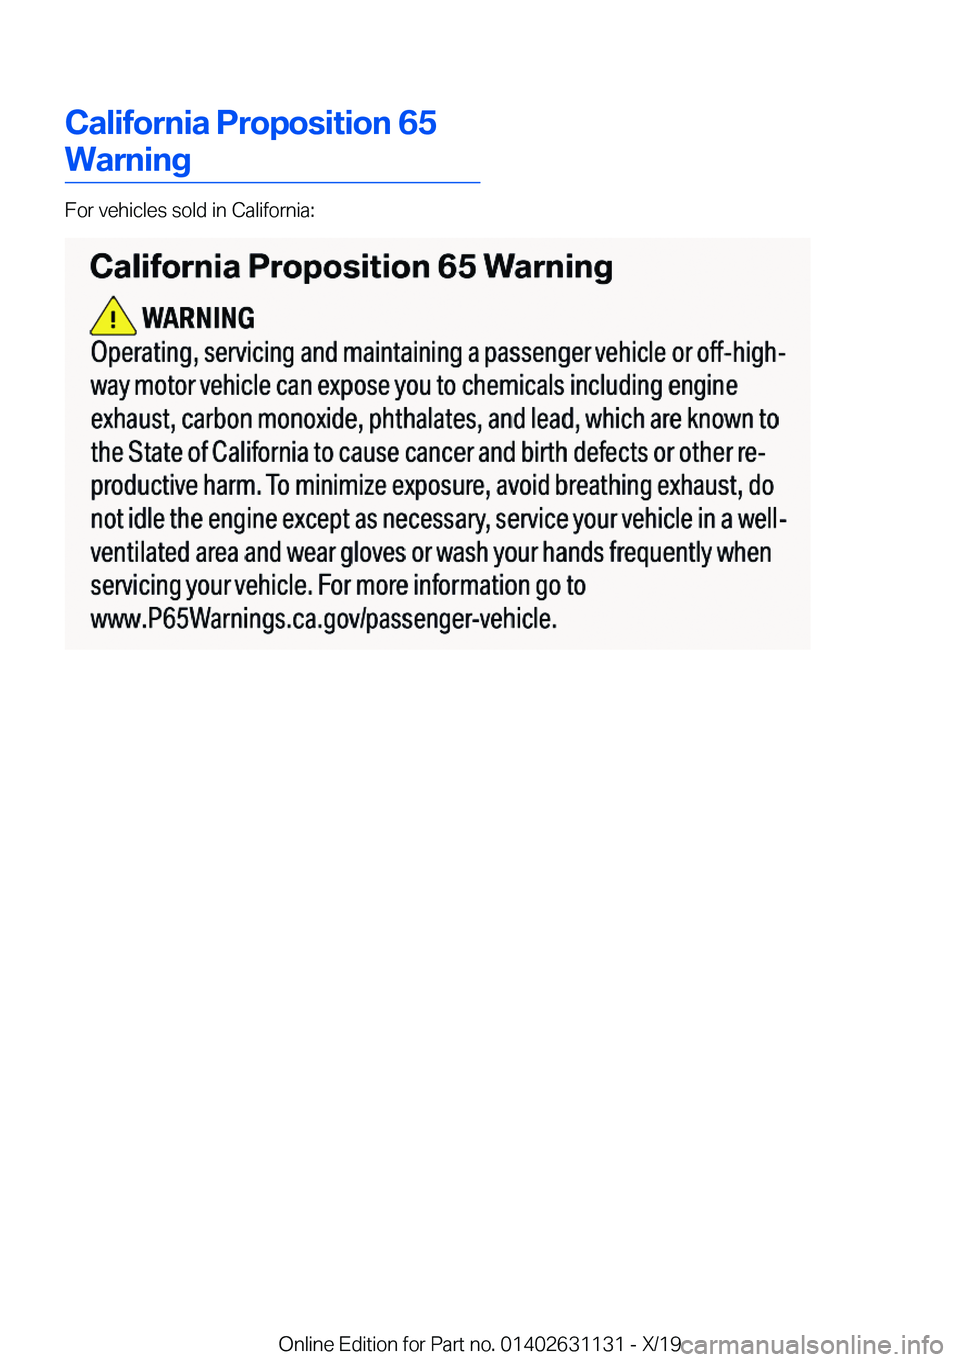 BMW X1 2020  Owners Manual �C�a�l�i�f�o�r�n�i�a��P�r�o�p�o�s�i�t�i�o�n��6�5
�W�a�r�n�i�n�g
�F�o�r��v�e�h�i�c�l�e�s��s�o�l�d��i�n��C�a�l�i�f�o�r�n�i�a�:
�O�n�l�i�n�e��E�d�i�t�i�o�n��f�o�r��P�a�r�t��n�o�.��0�1�4�0�2�6�